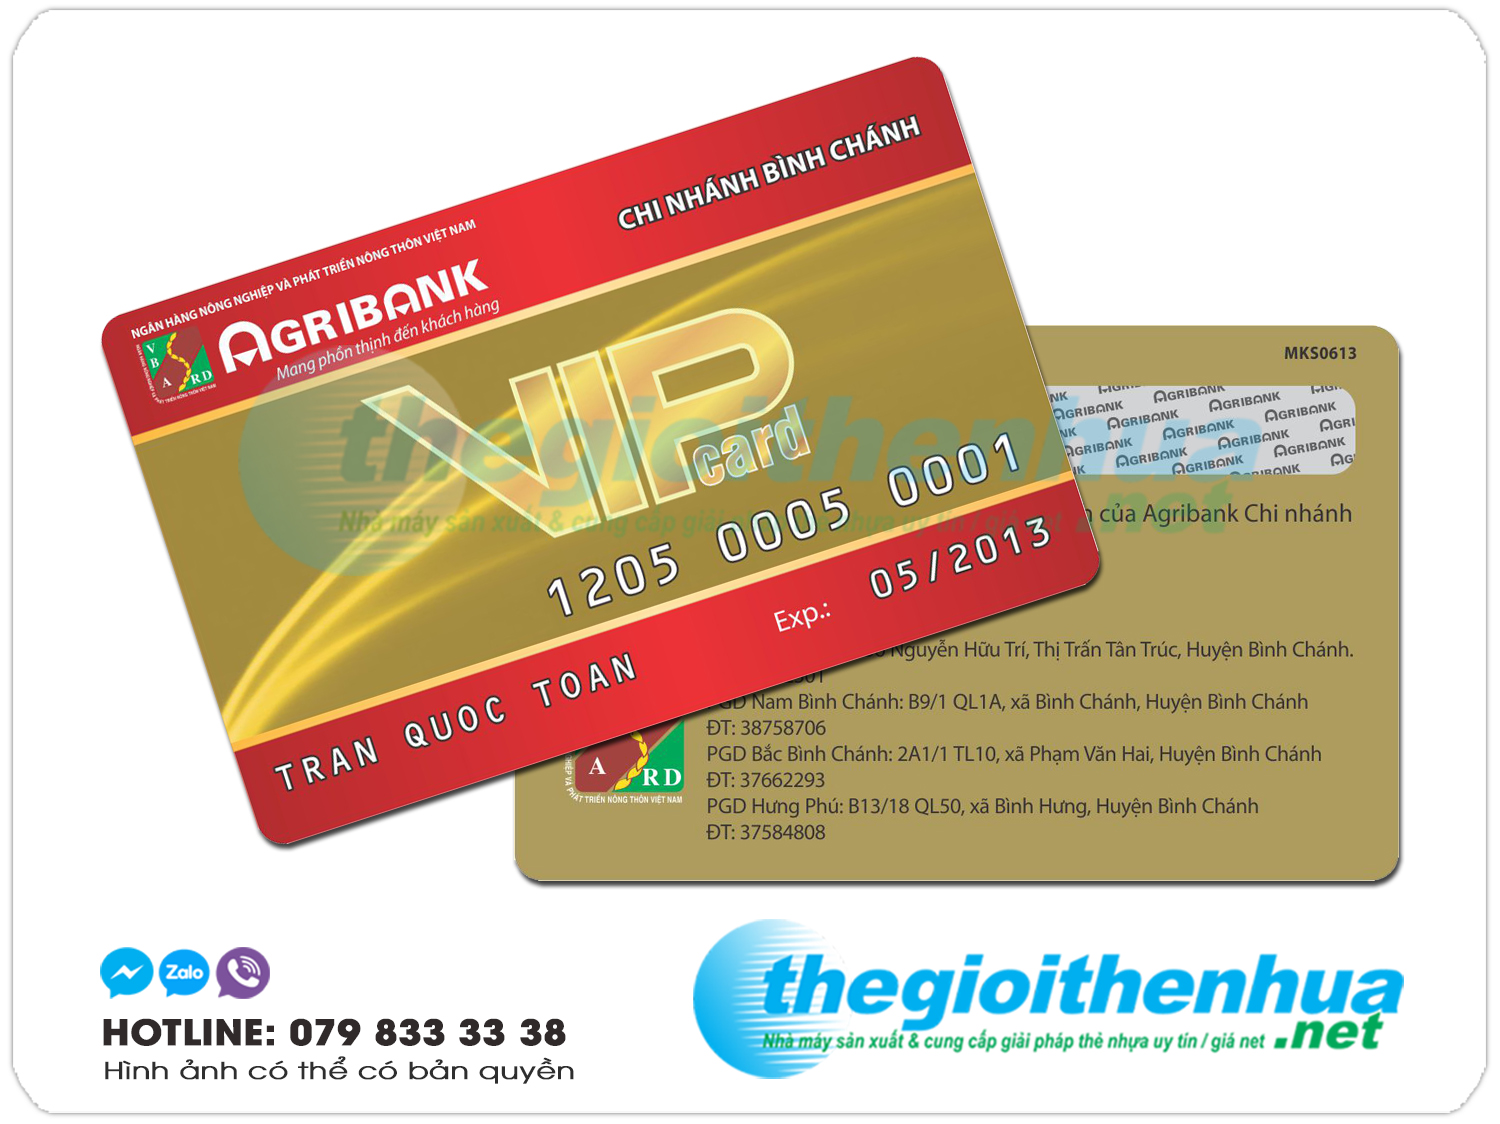 In Thẻ nhựa ATM ngân hàng, thẻ vip, thẻ khách hàng, thẻ nhân viên